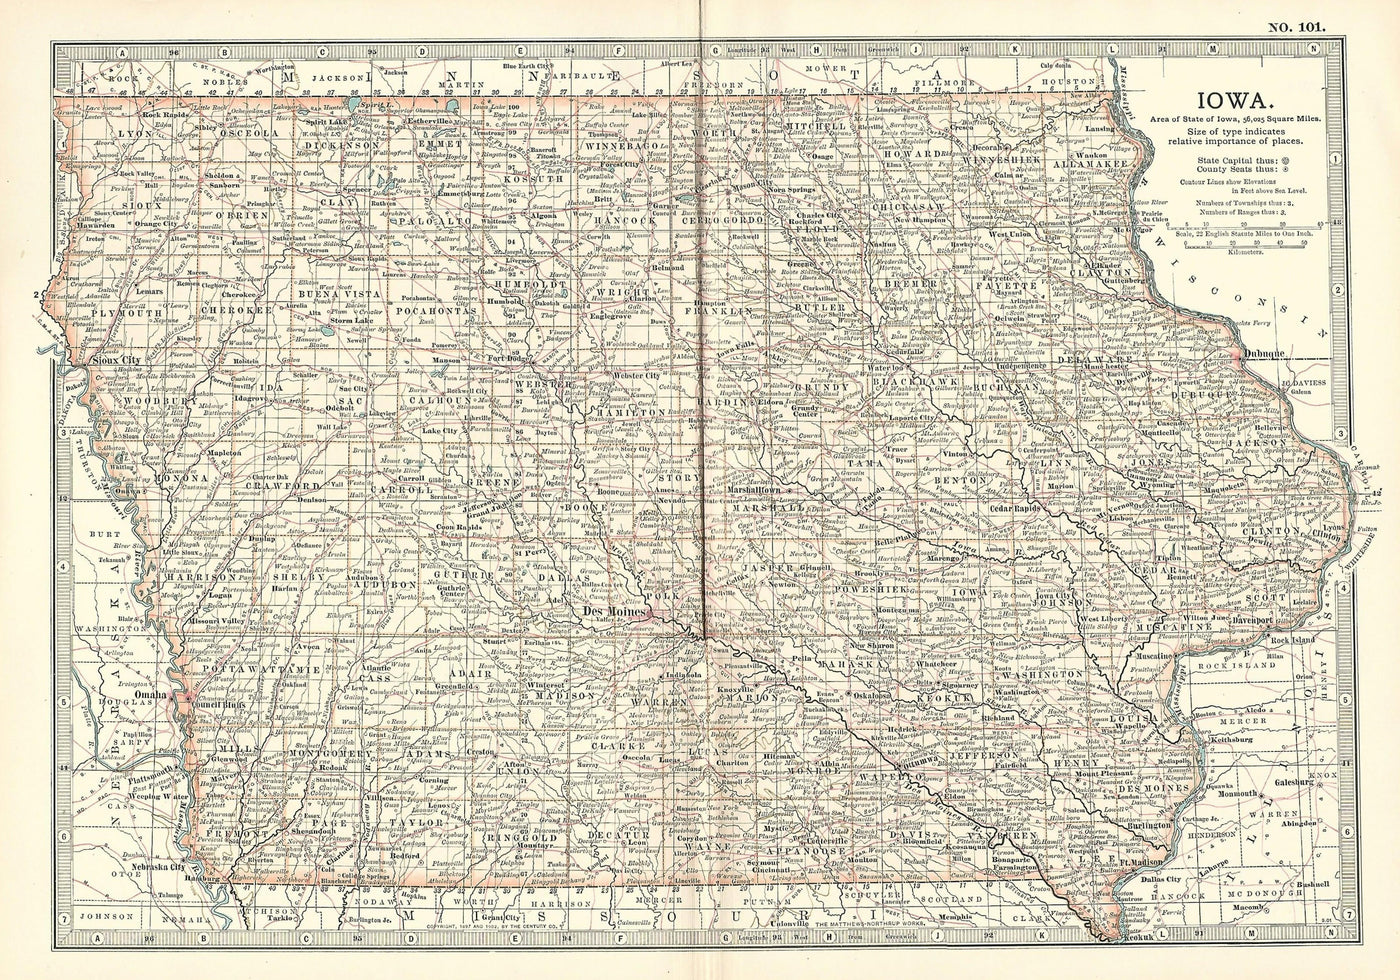 Iowa, No.101, Encyclopaedia Britannica 1903